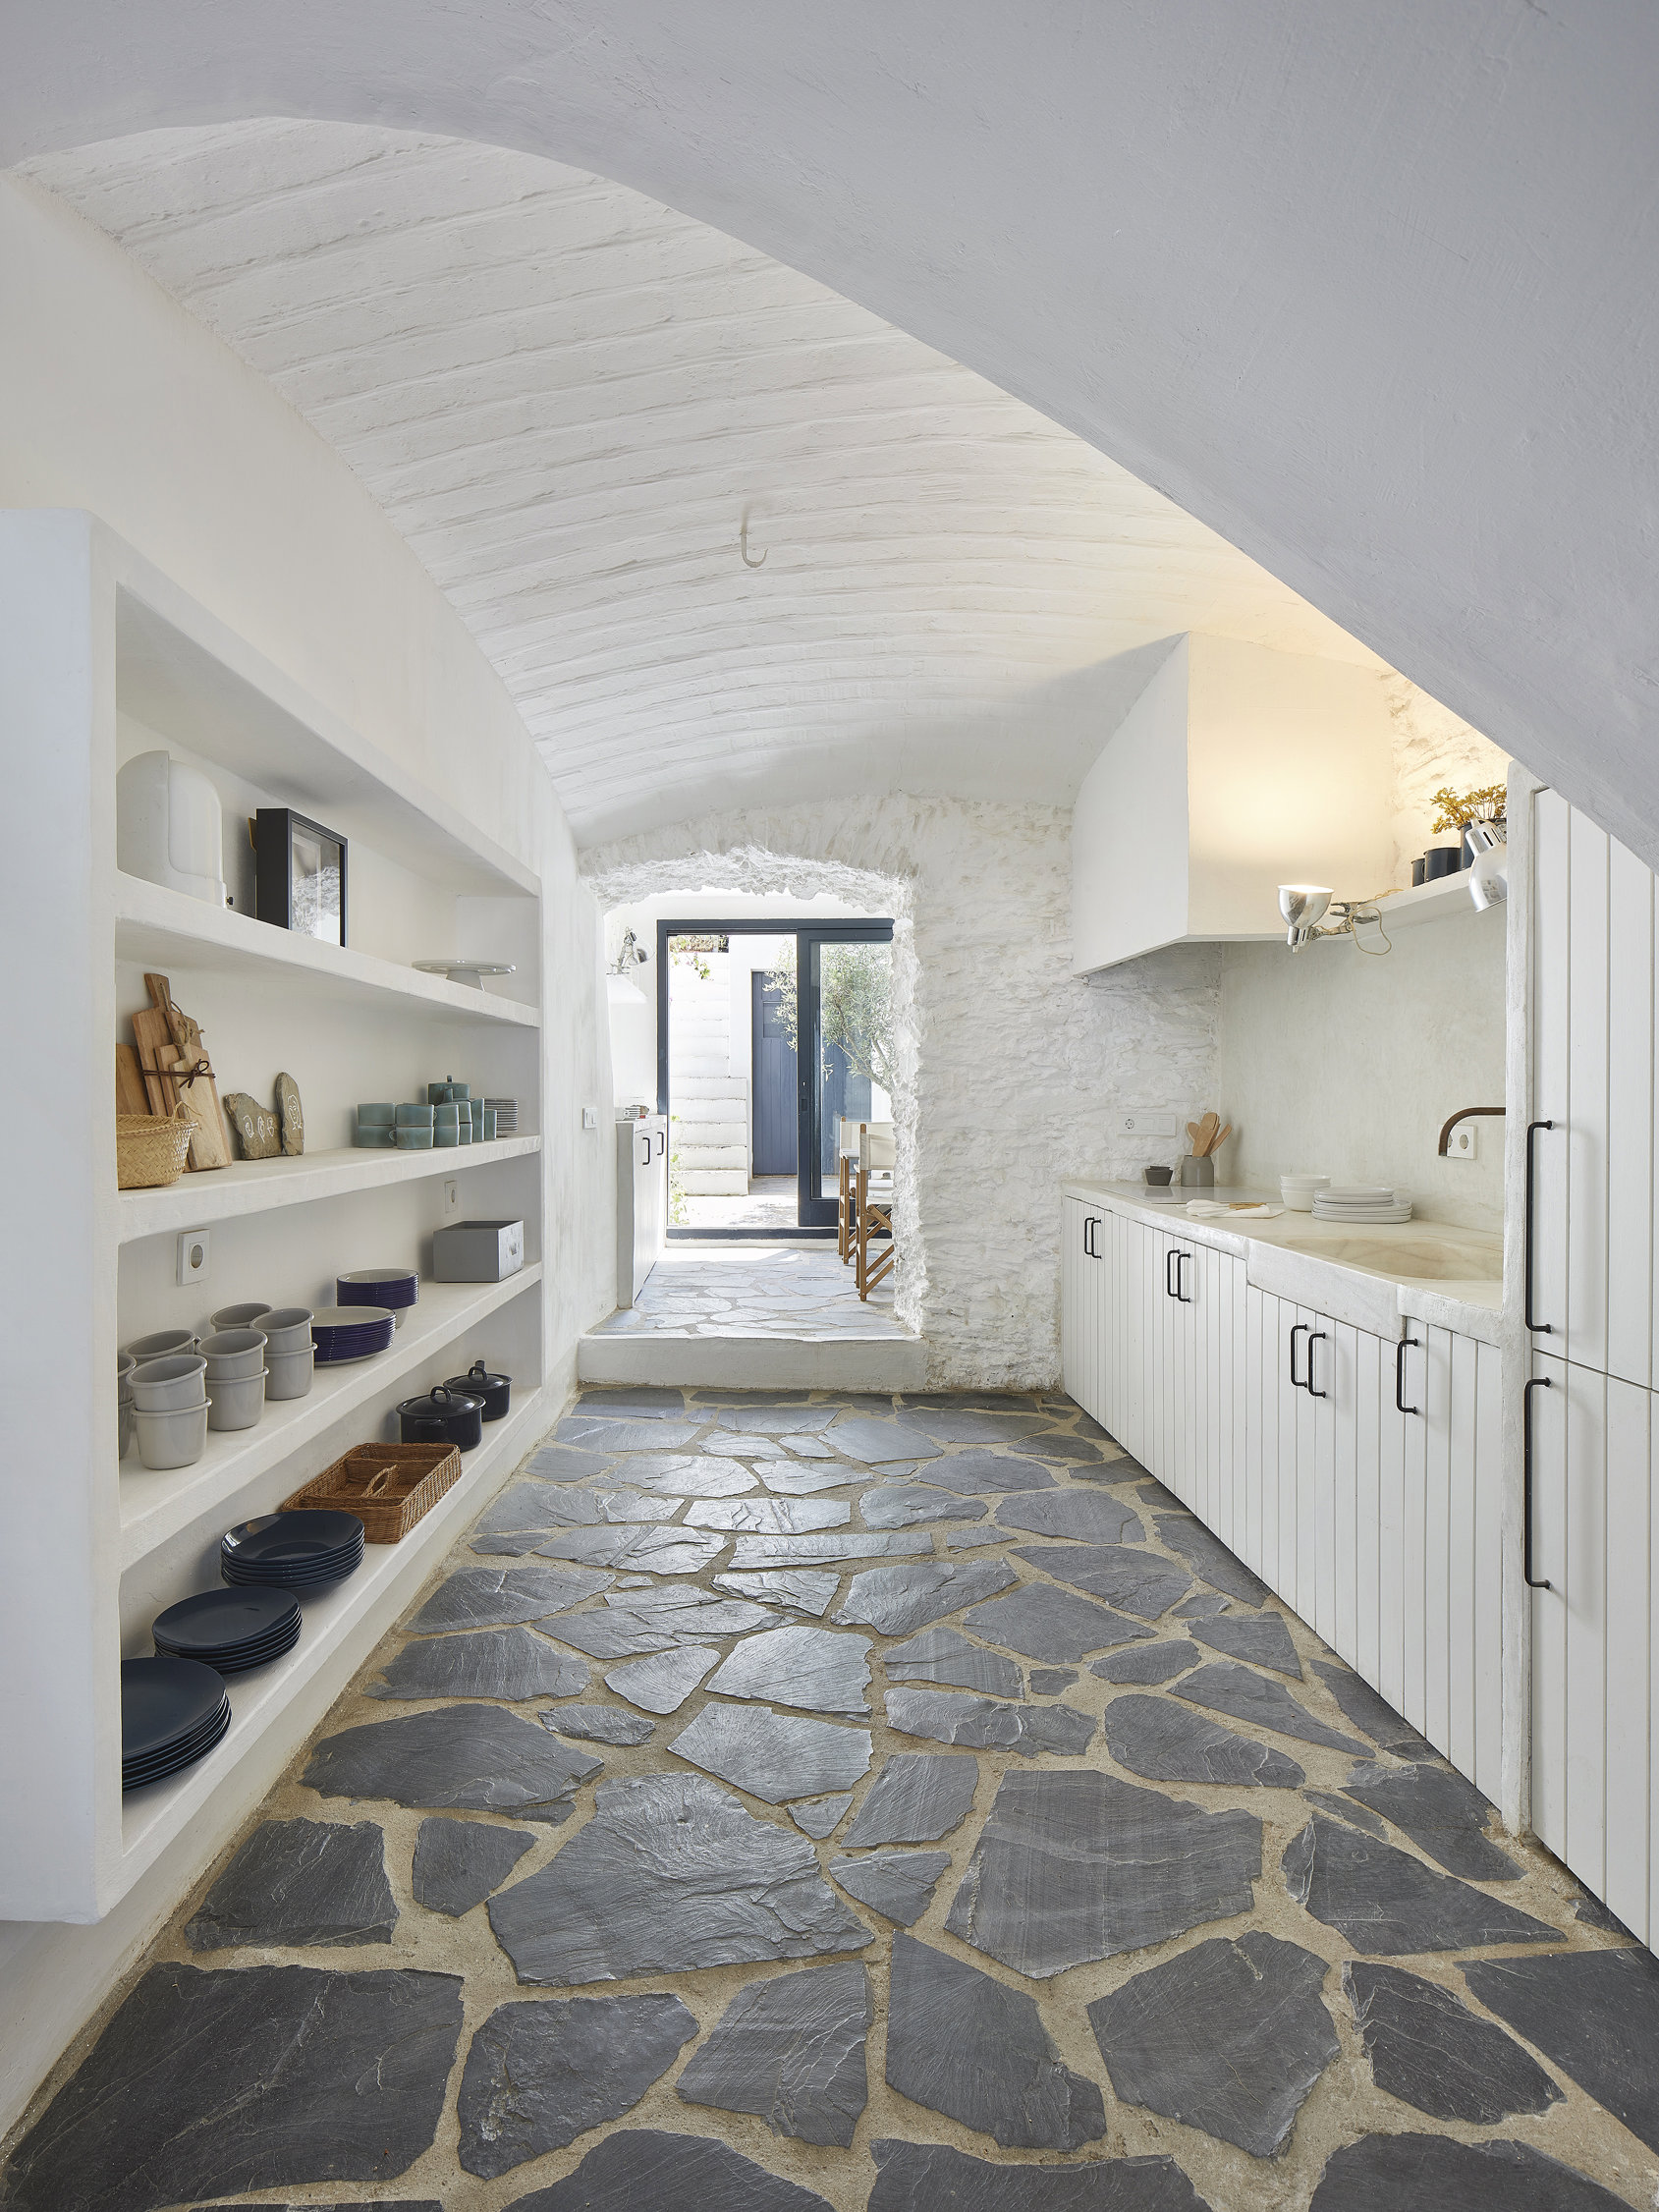 Cocina blanca con suelo de piedra en azul marino y vajilla expuesta en cerámica. Además, las paredes blancas y de piedra dan mucha luminosidad a esta cocina.